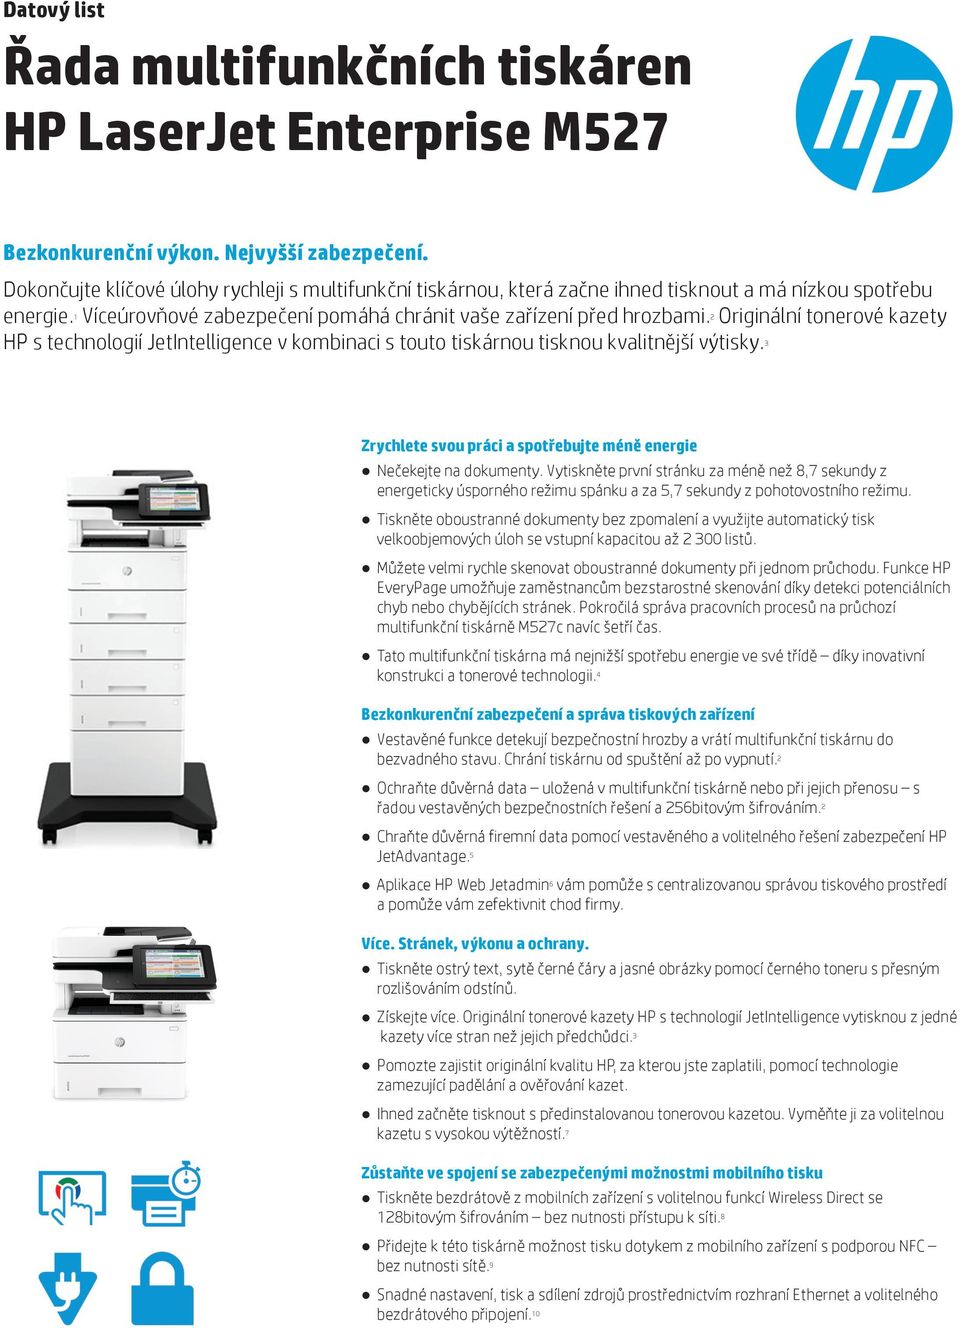 2 Originální tonerové kazety HP s technologií JetIntelligence v kombinaci s touto tiskárnou tisknou kvalitnější výtisky. 3 Zrychlete svou práci a spotřebujte méně energie Nečekejte na dokumenty.